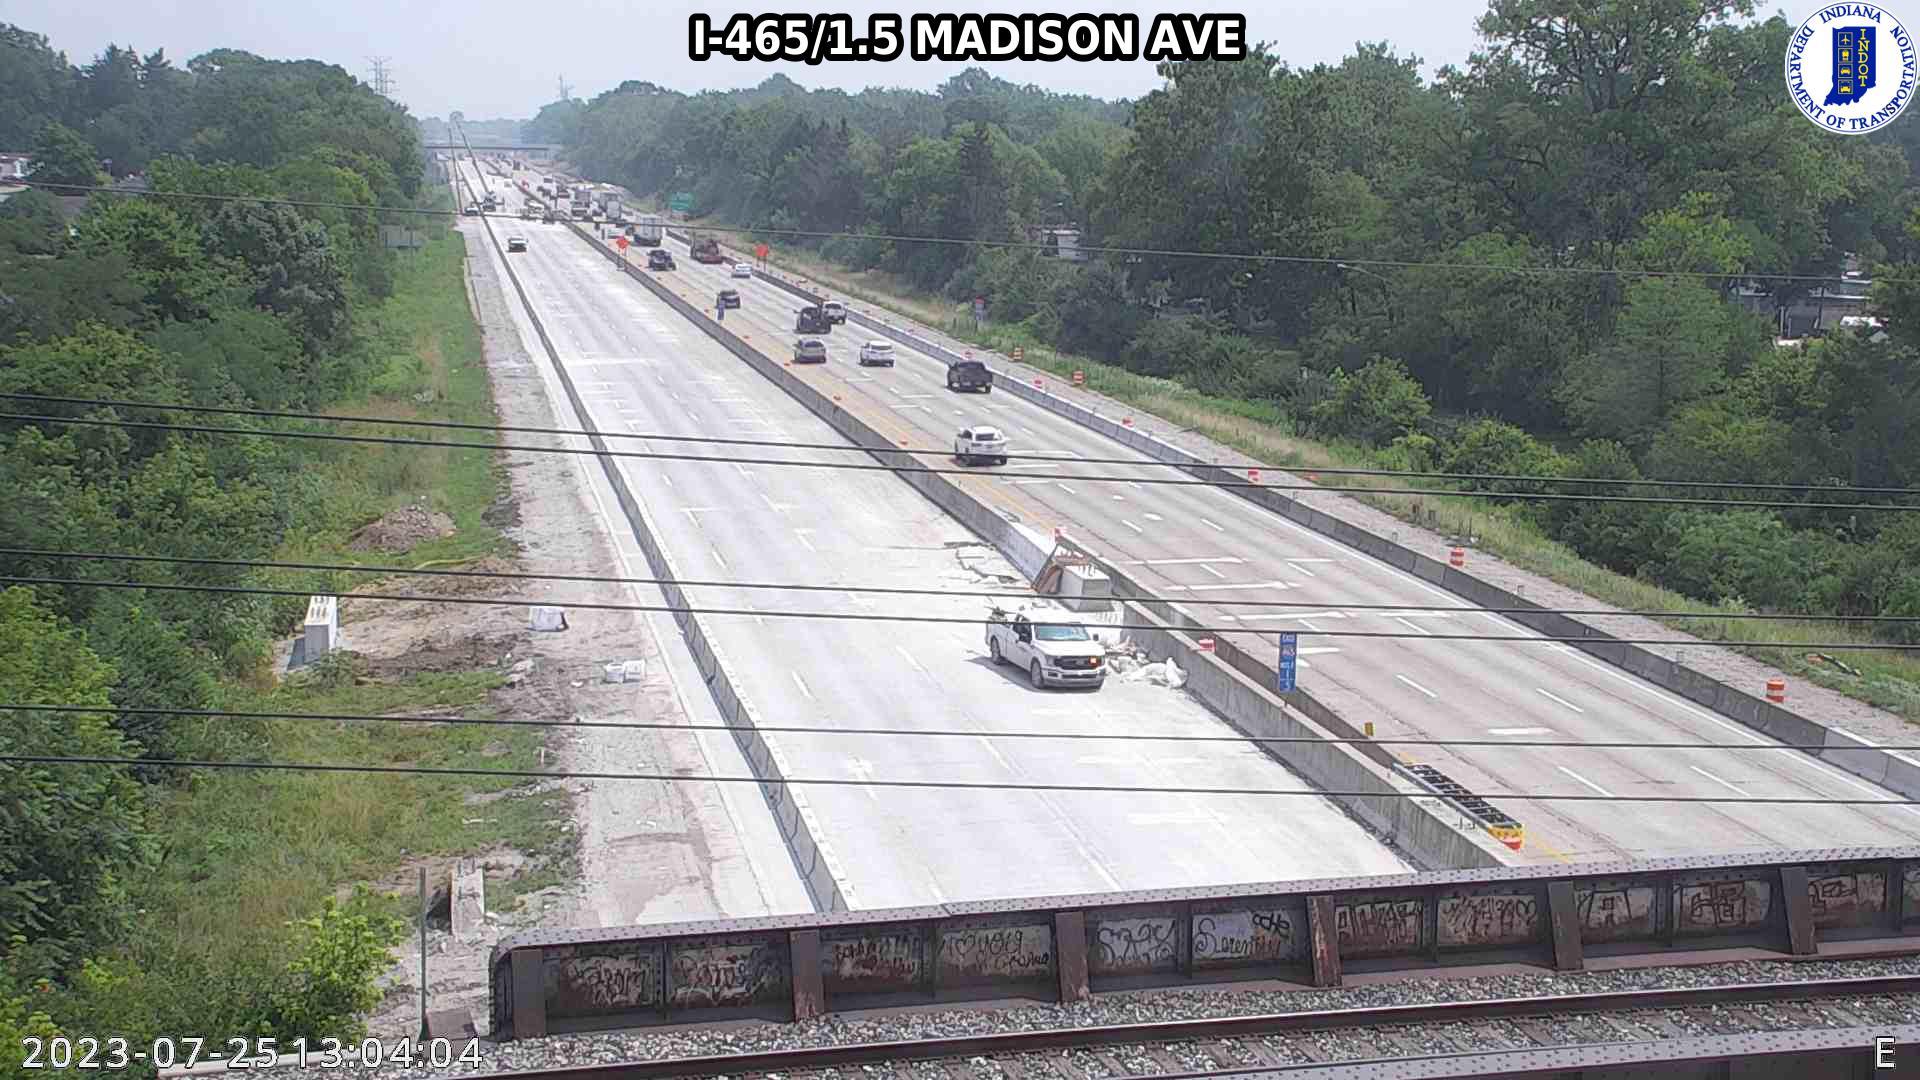 Traffic Cam Indianapolis: I-465: I-465/1.5 MADISON AVE